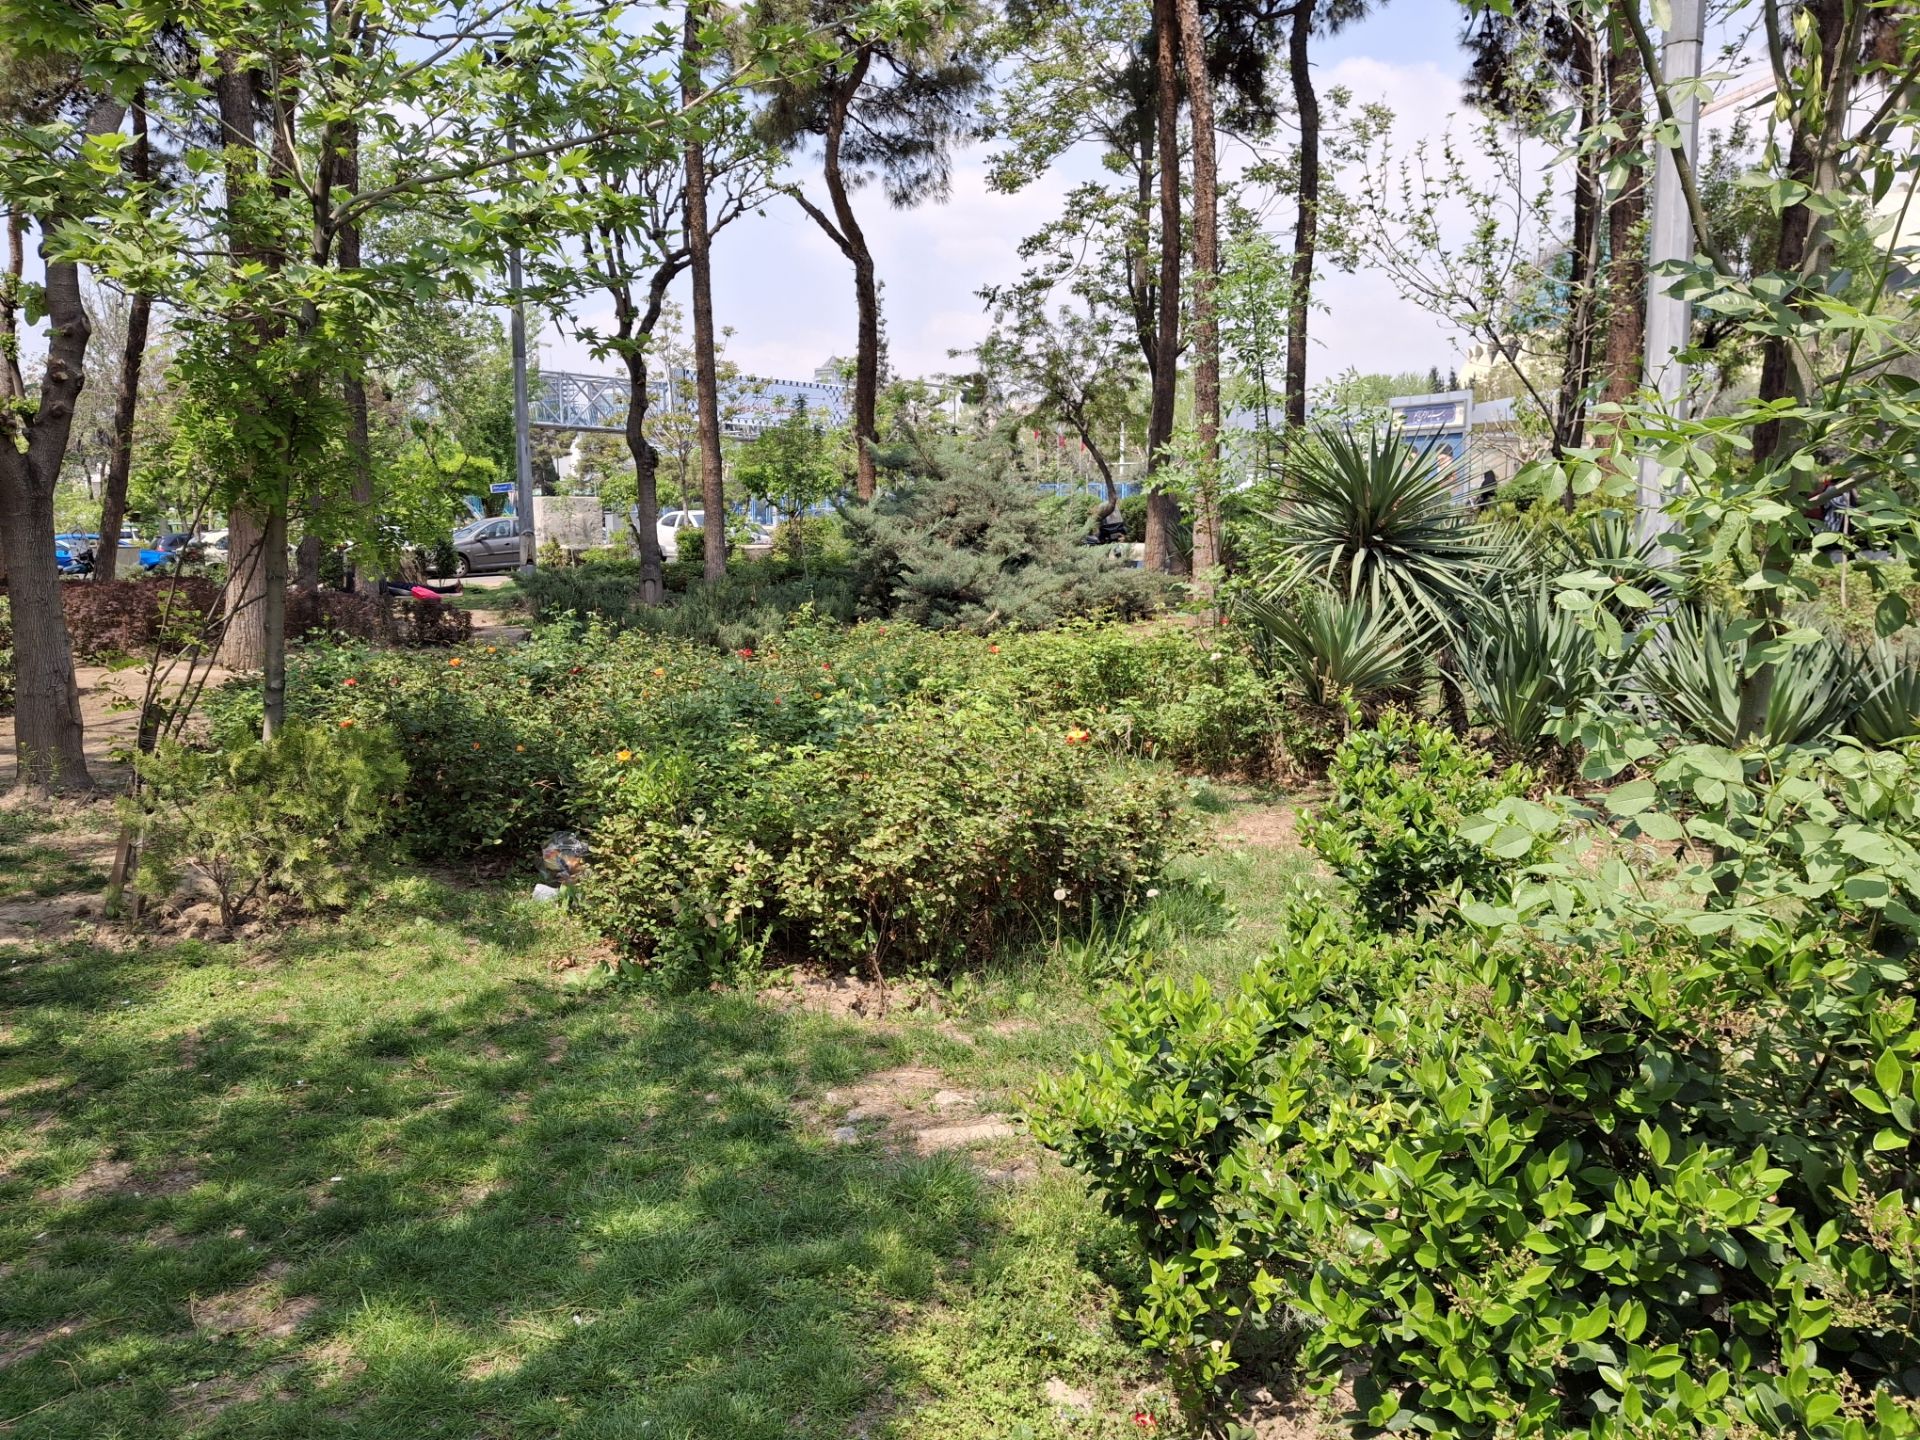 نمایی از درختان و بوته های سبز در یک پارک با دوربین گلکسی A35